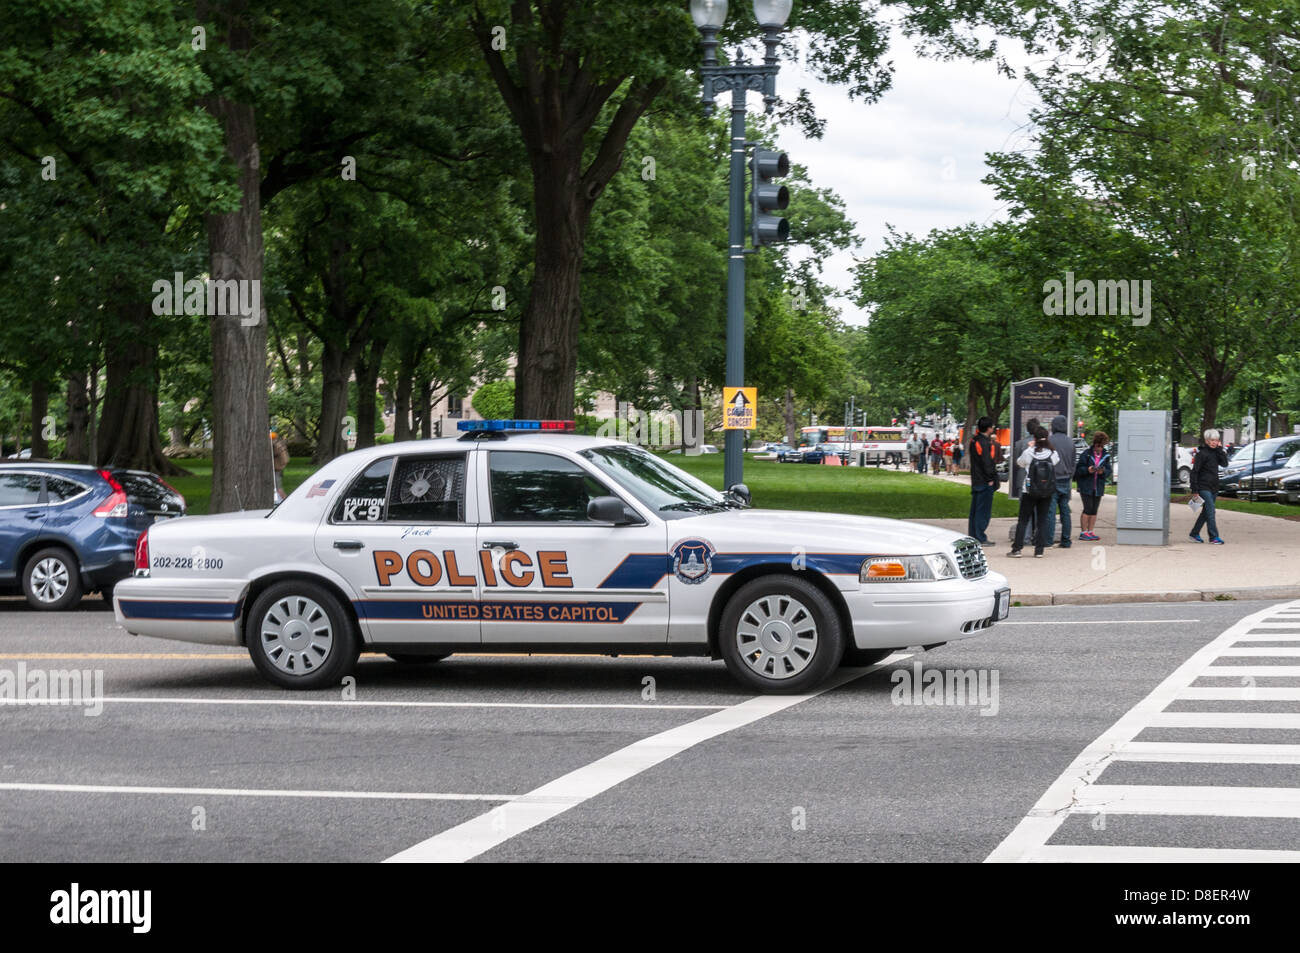 United States Capitol polizia Ford Crown Victoria auto della polizia, Washington DC Foto Stock